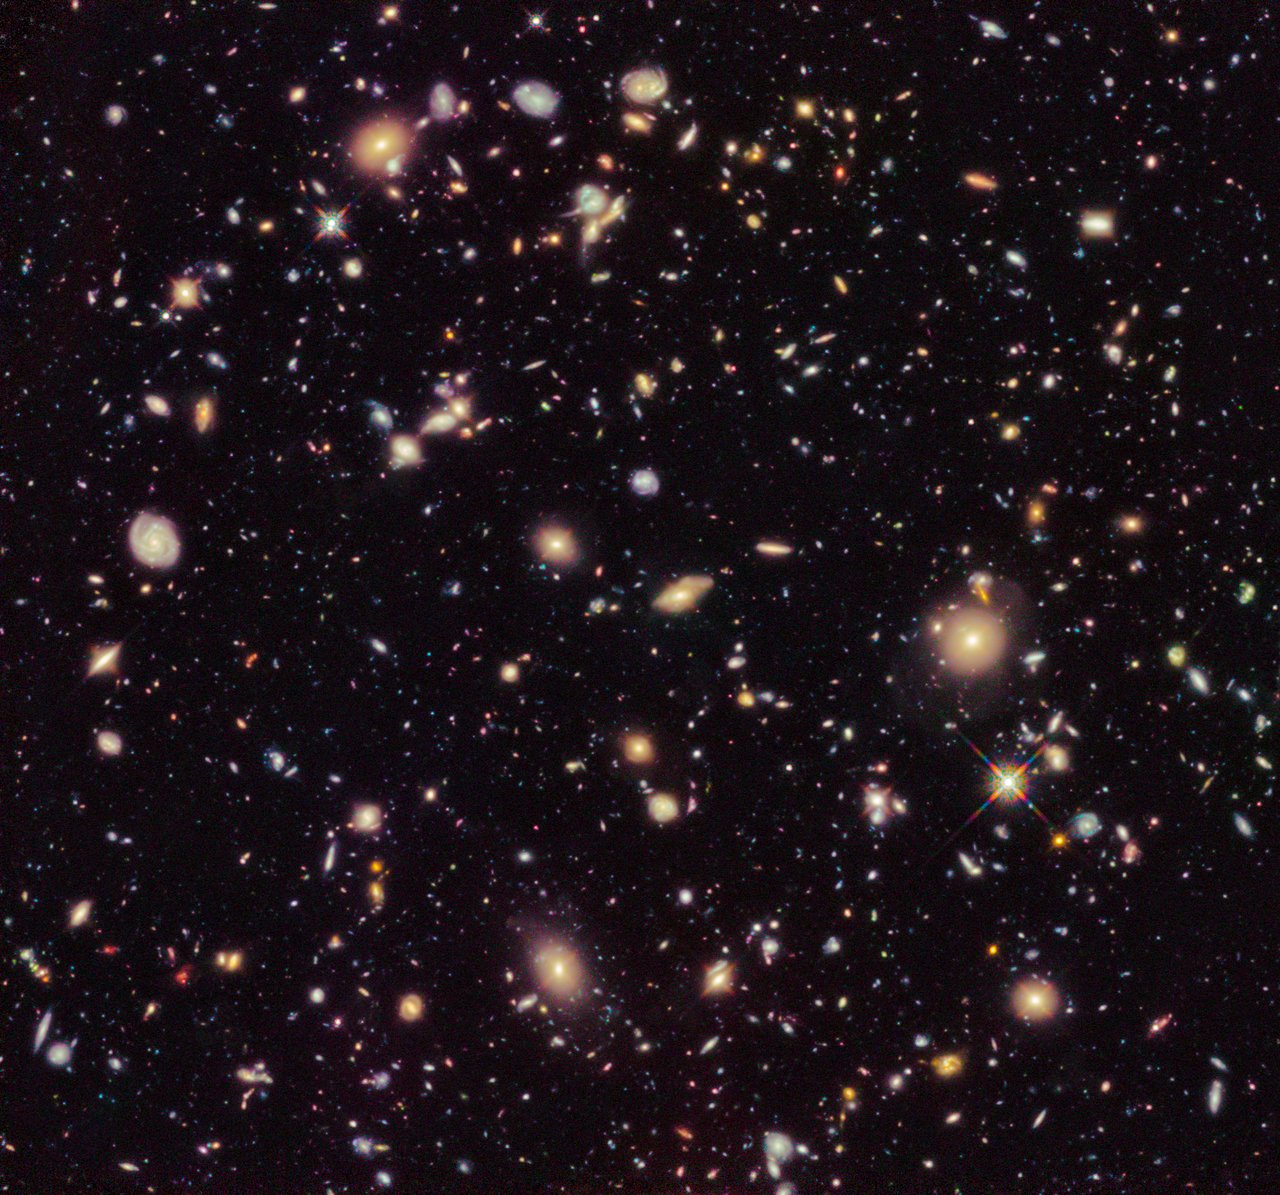 De Hubble-spanning blijft bestaan - wat zeg ik, hij is alleen maar groter geworden